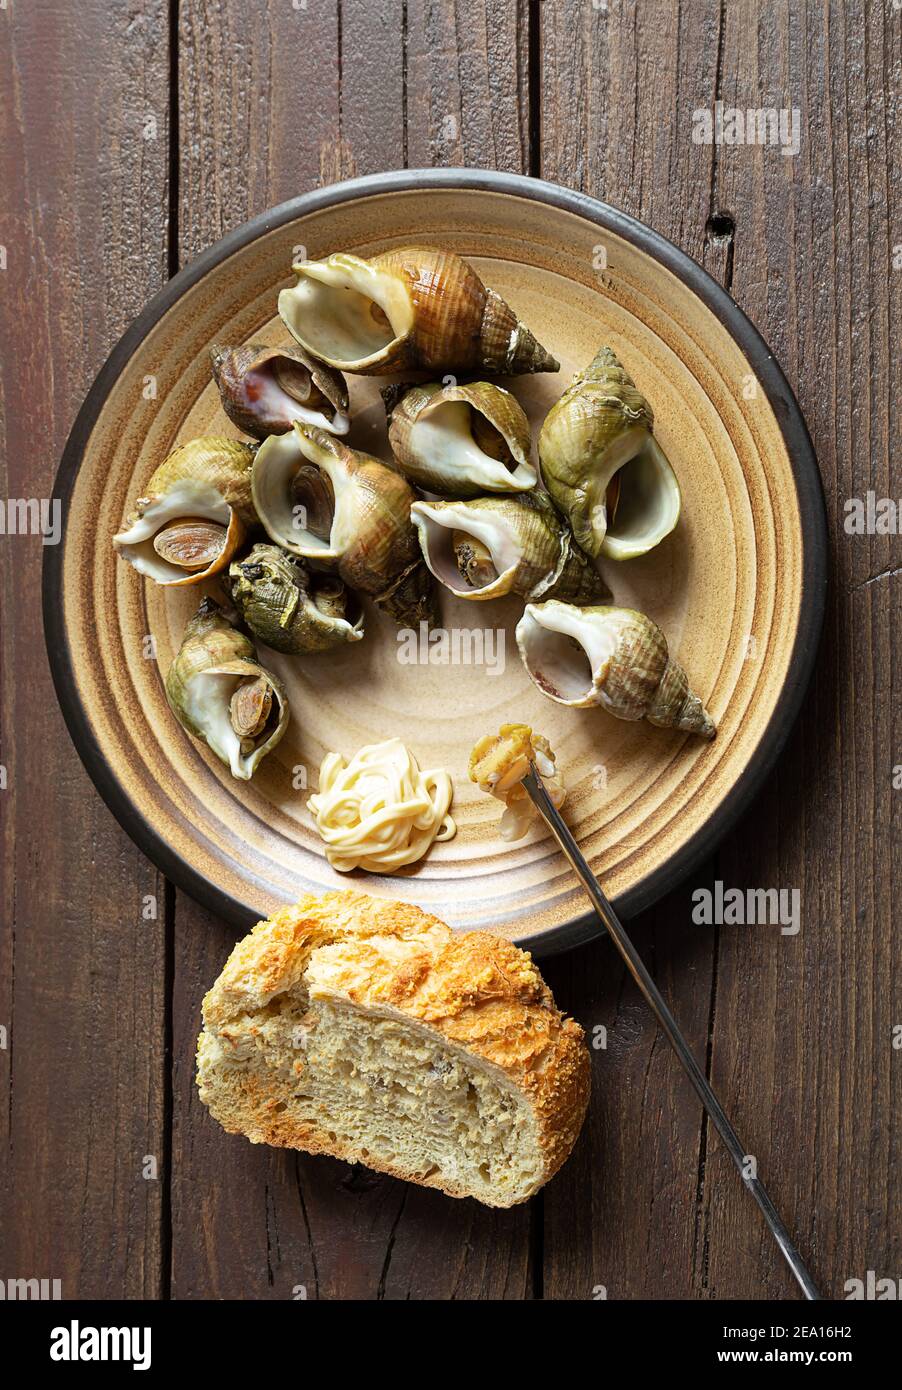 Frische Schnecken bulot oder gewöhnliche Welpen nach einem traditionellen französischen Rezept in einem Teller und ein Stück Brot auf einem dunklen Holztisch zubereitet, oben Stockfoto